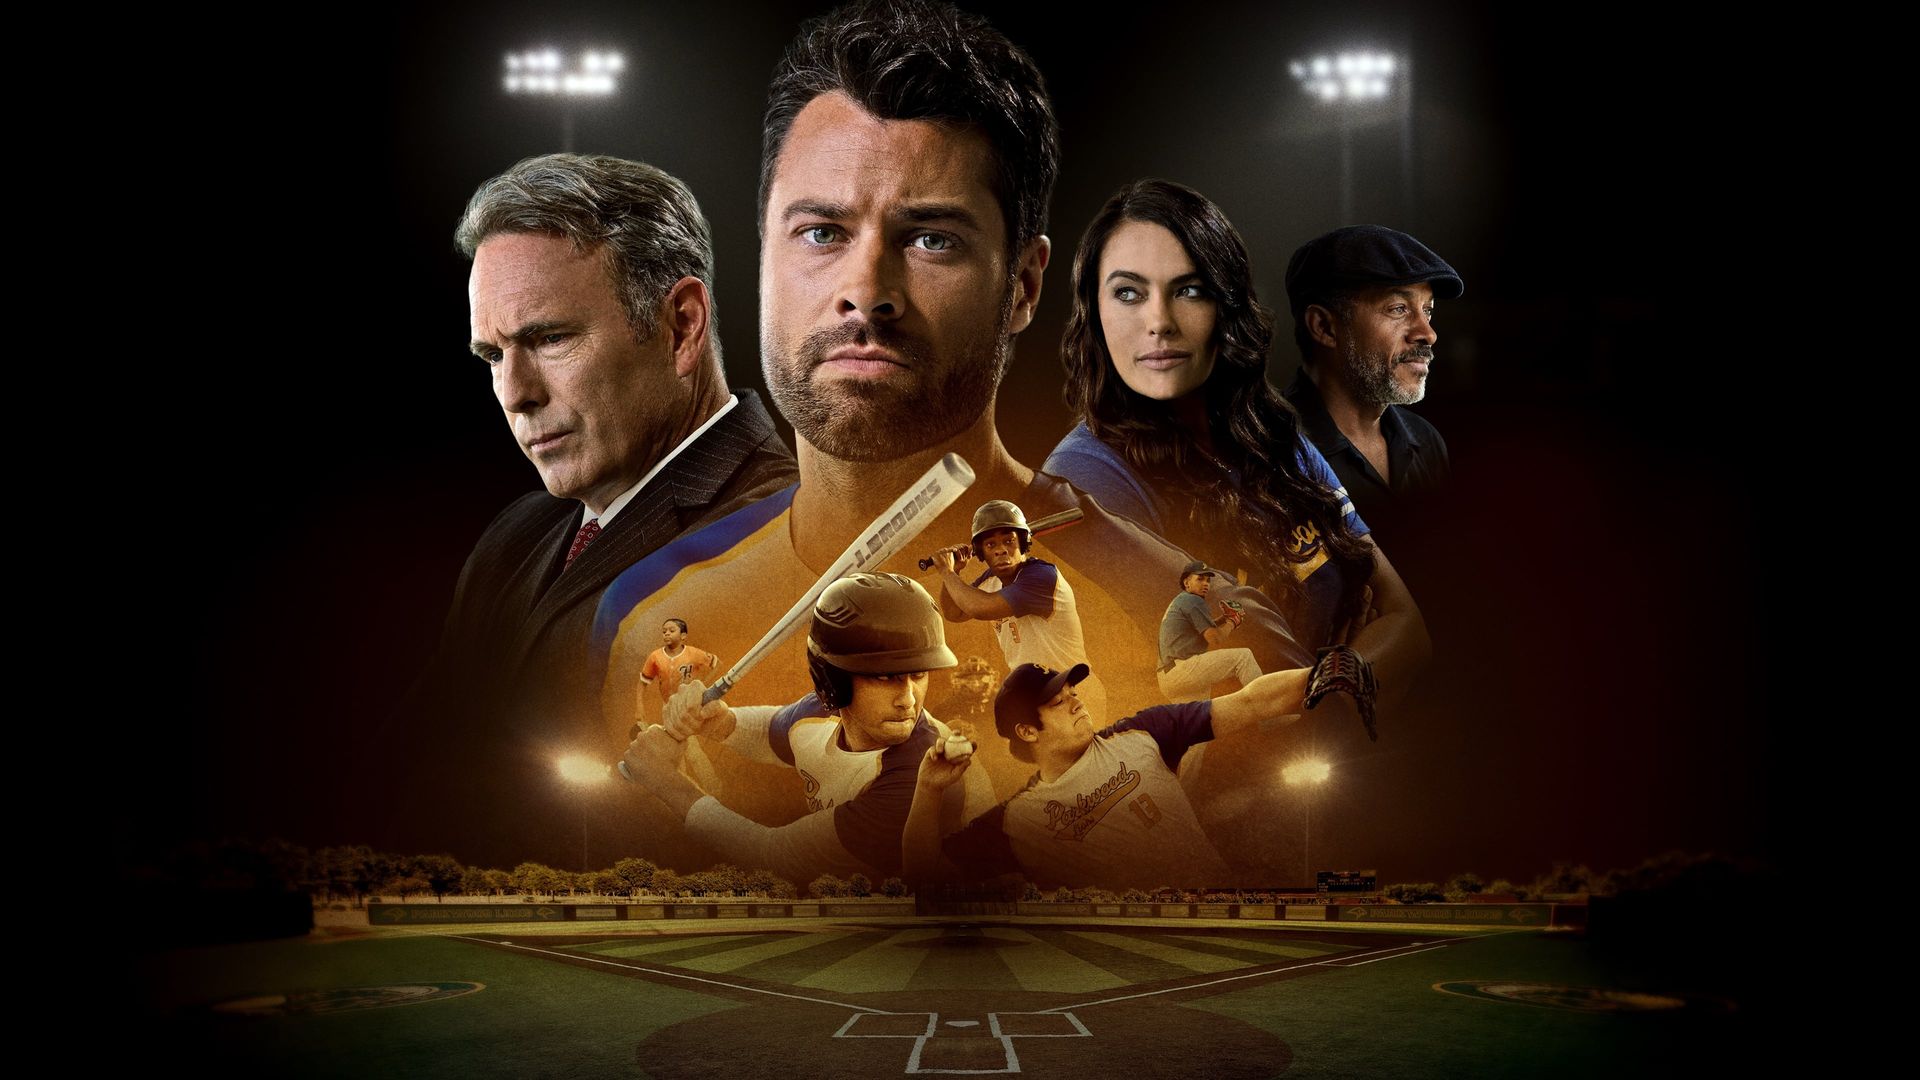 Running the Bases (2022) - IMDb